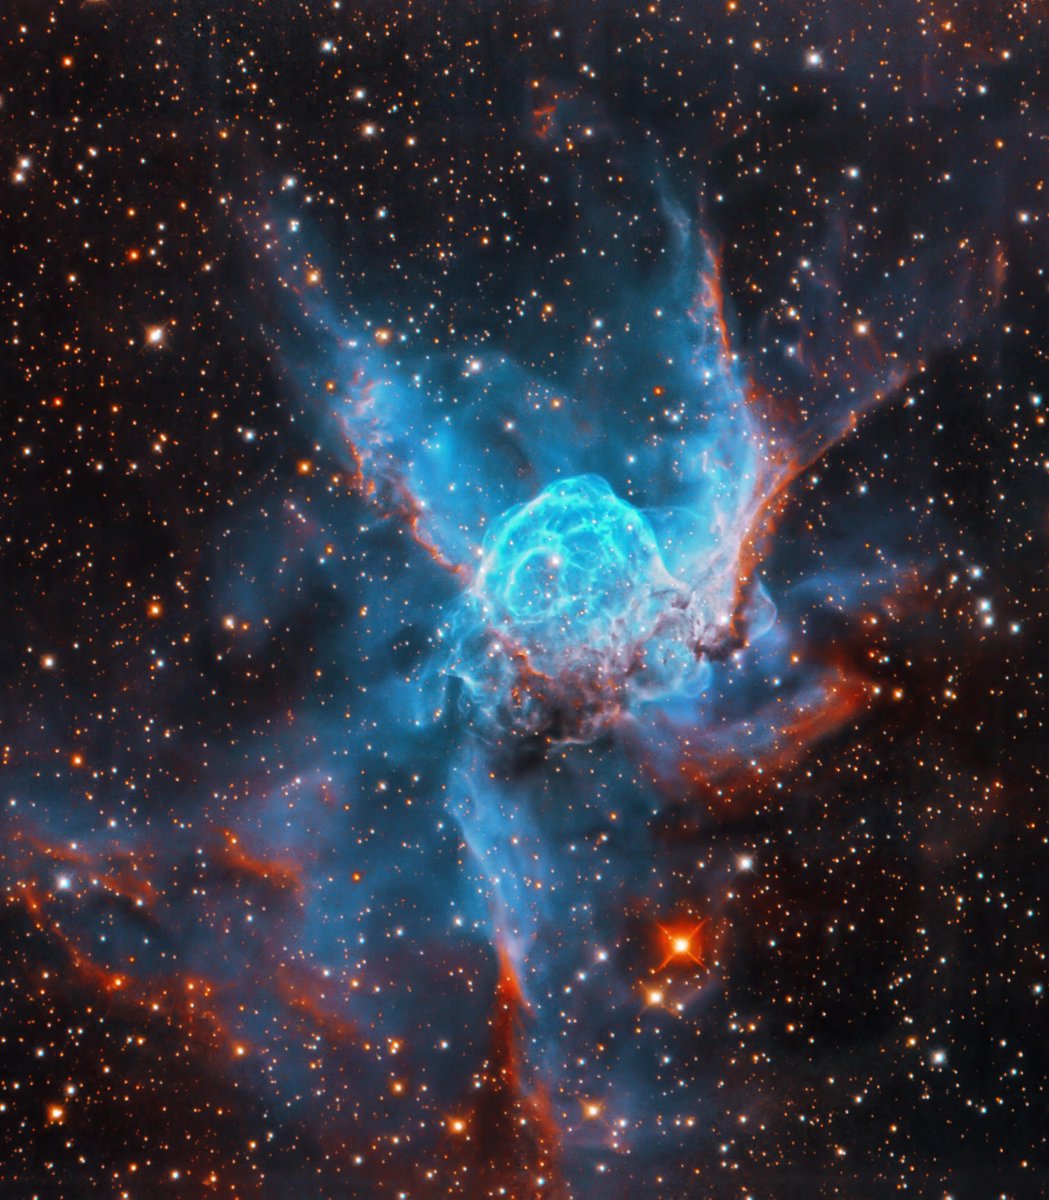 RT @redditSpacePorn: Thor's Helmet #Nebula shot from 29hrs https://t.co/yUr63DL0QW